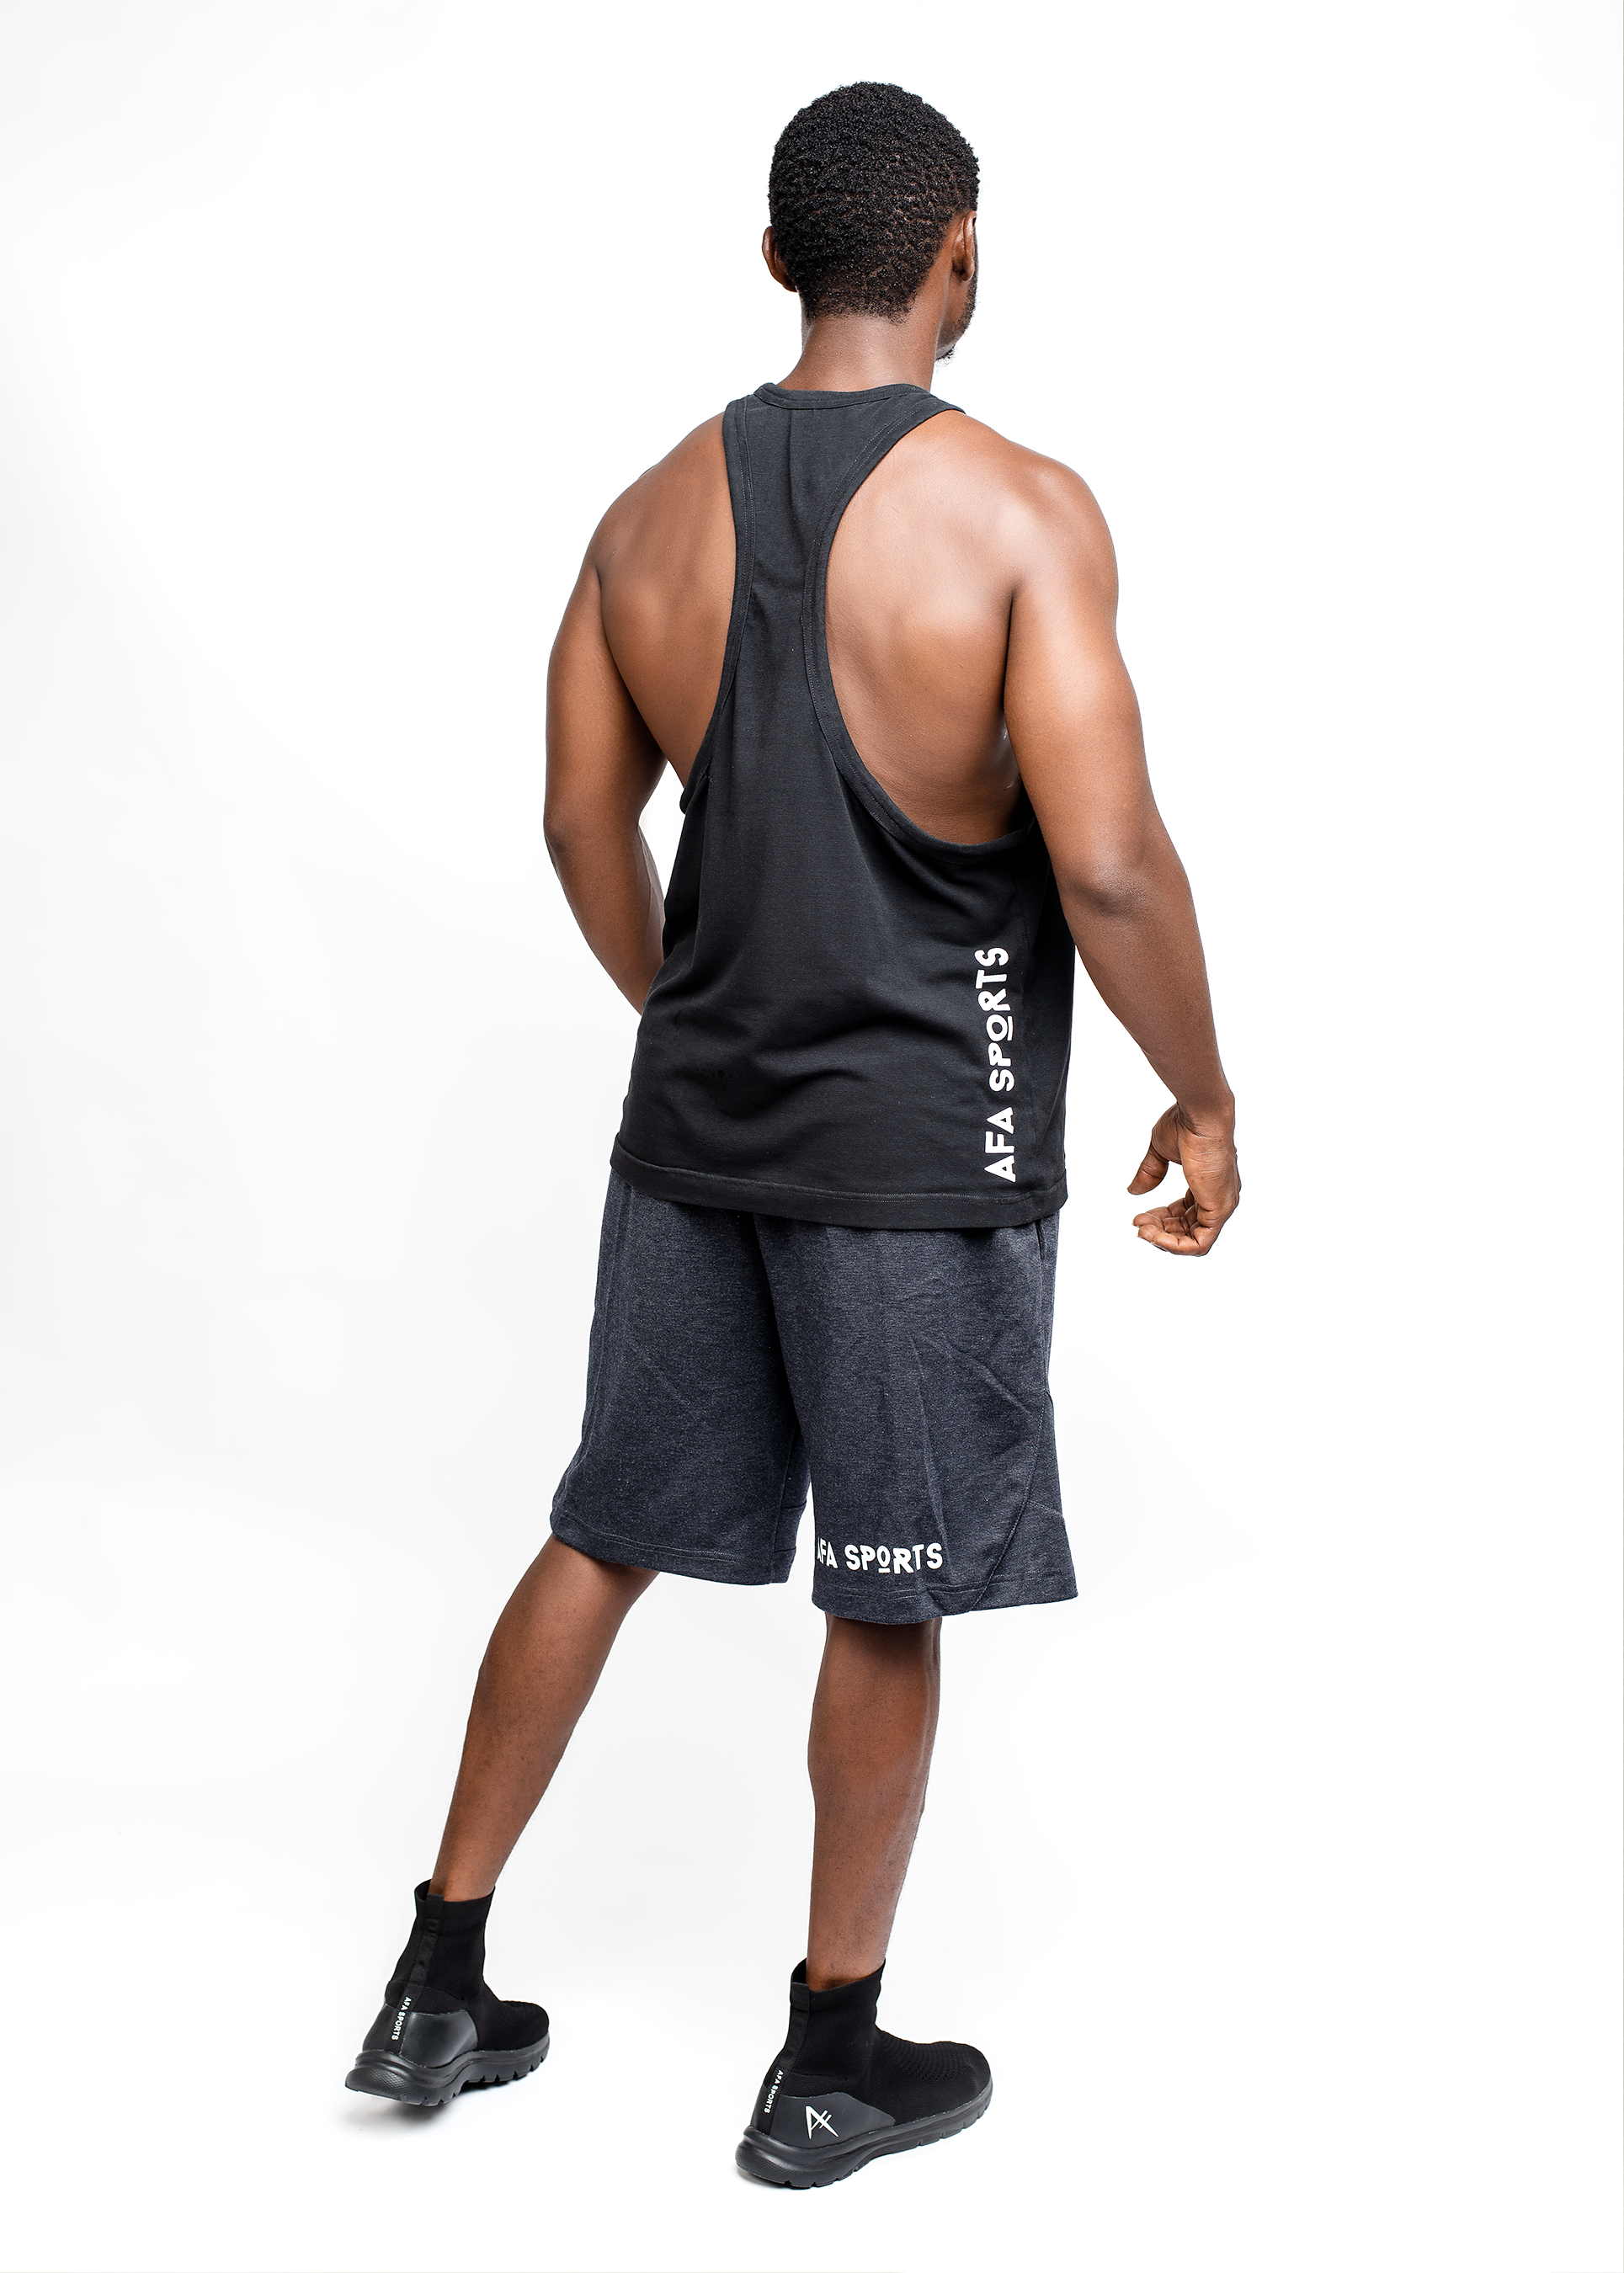 Men's Workout Tank Top Black